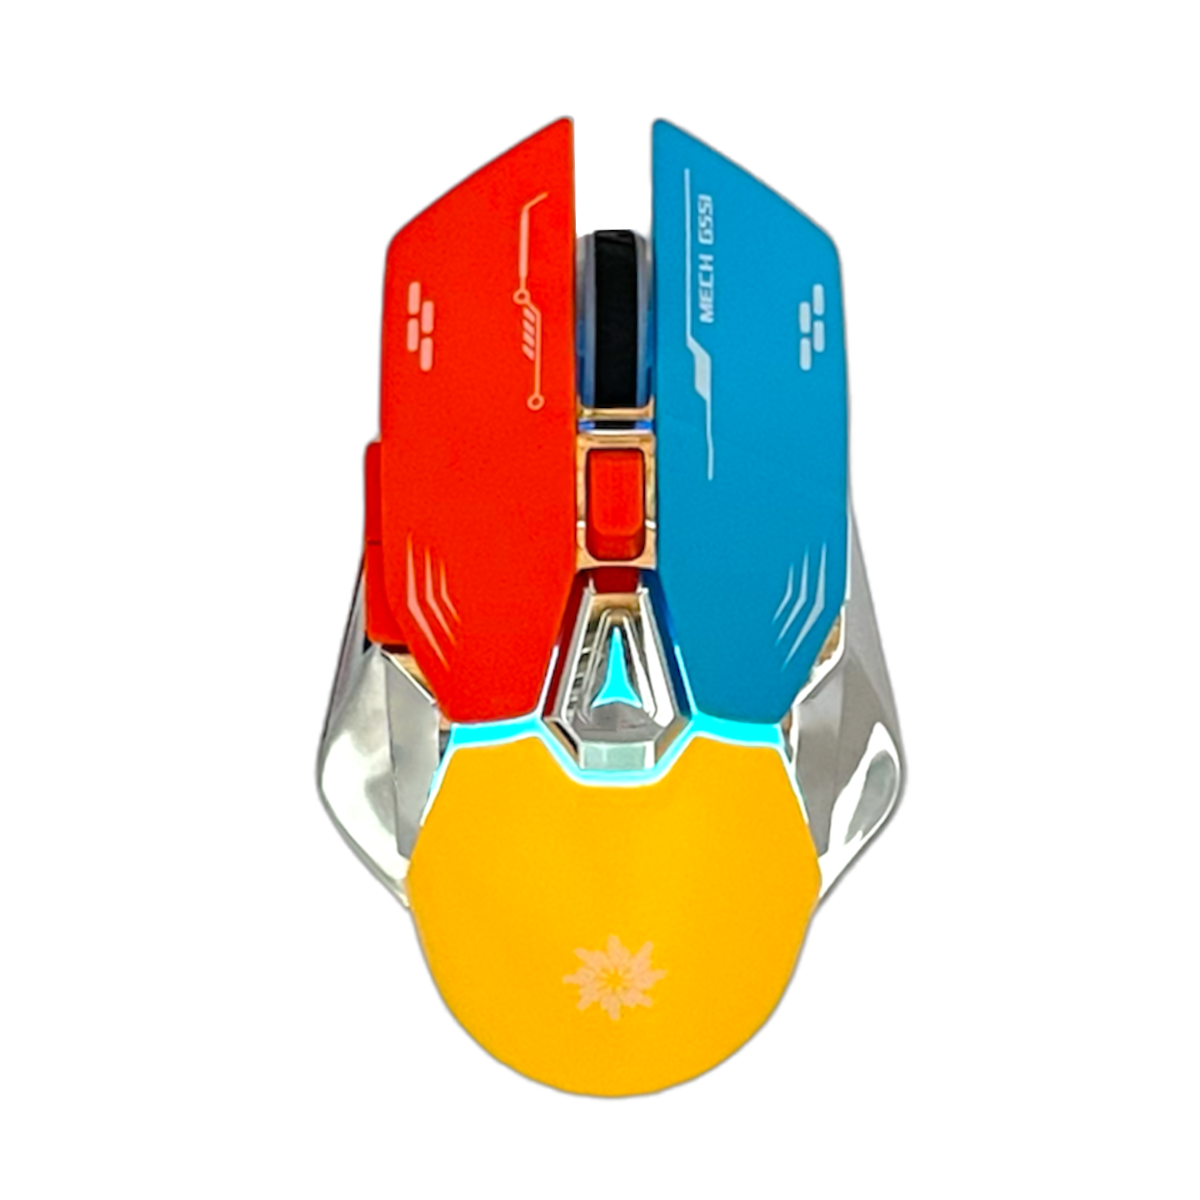 Беспроводная игровая мышь Run Energy G-551-D белый, желтый, красный, синий